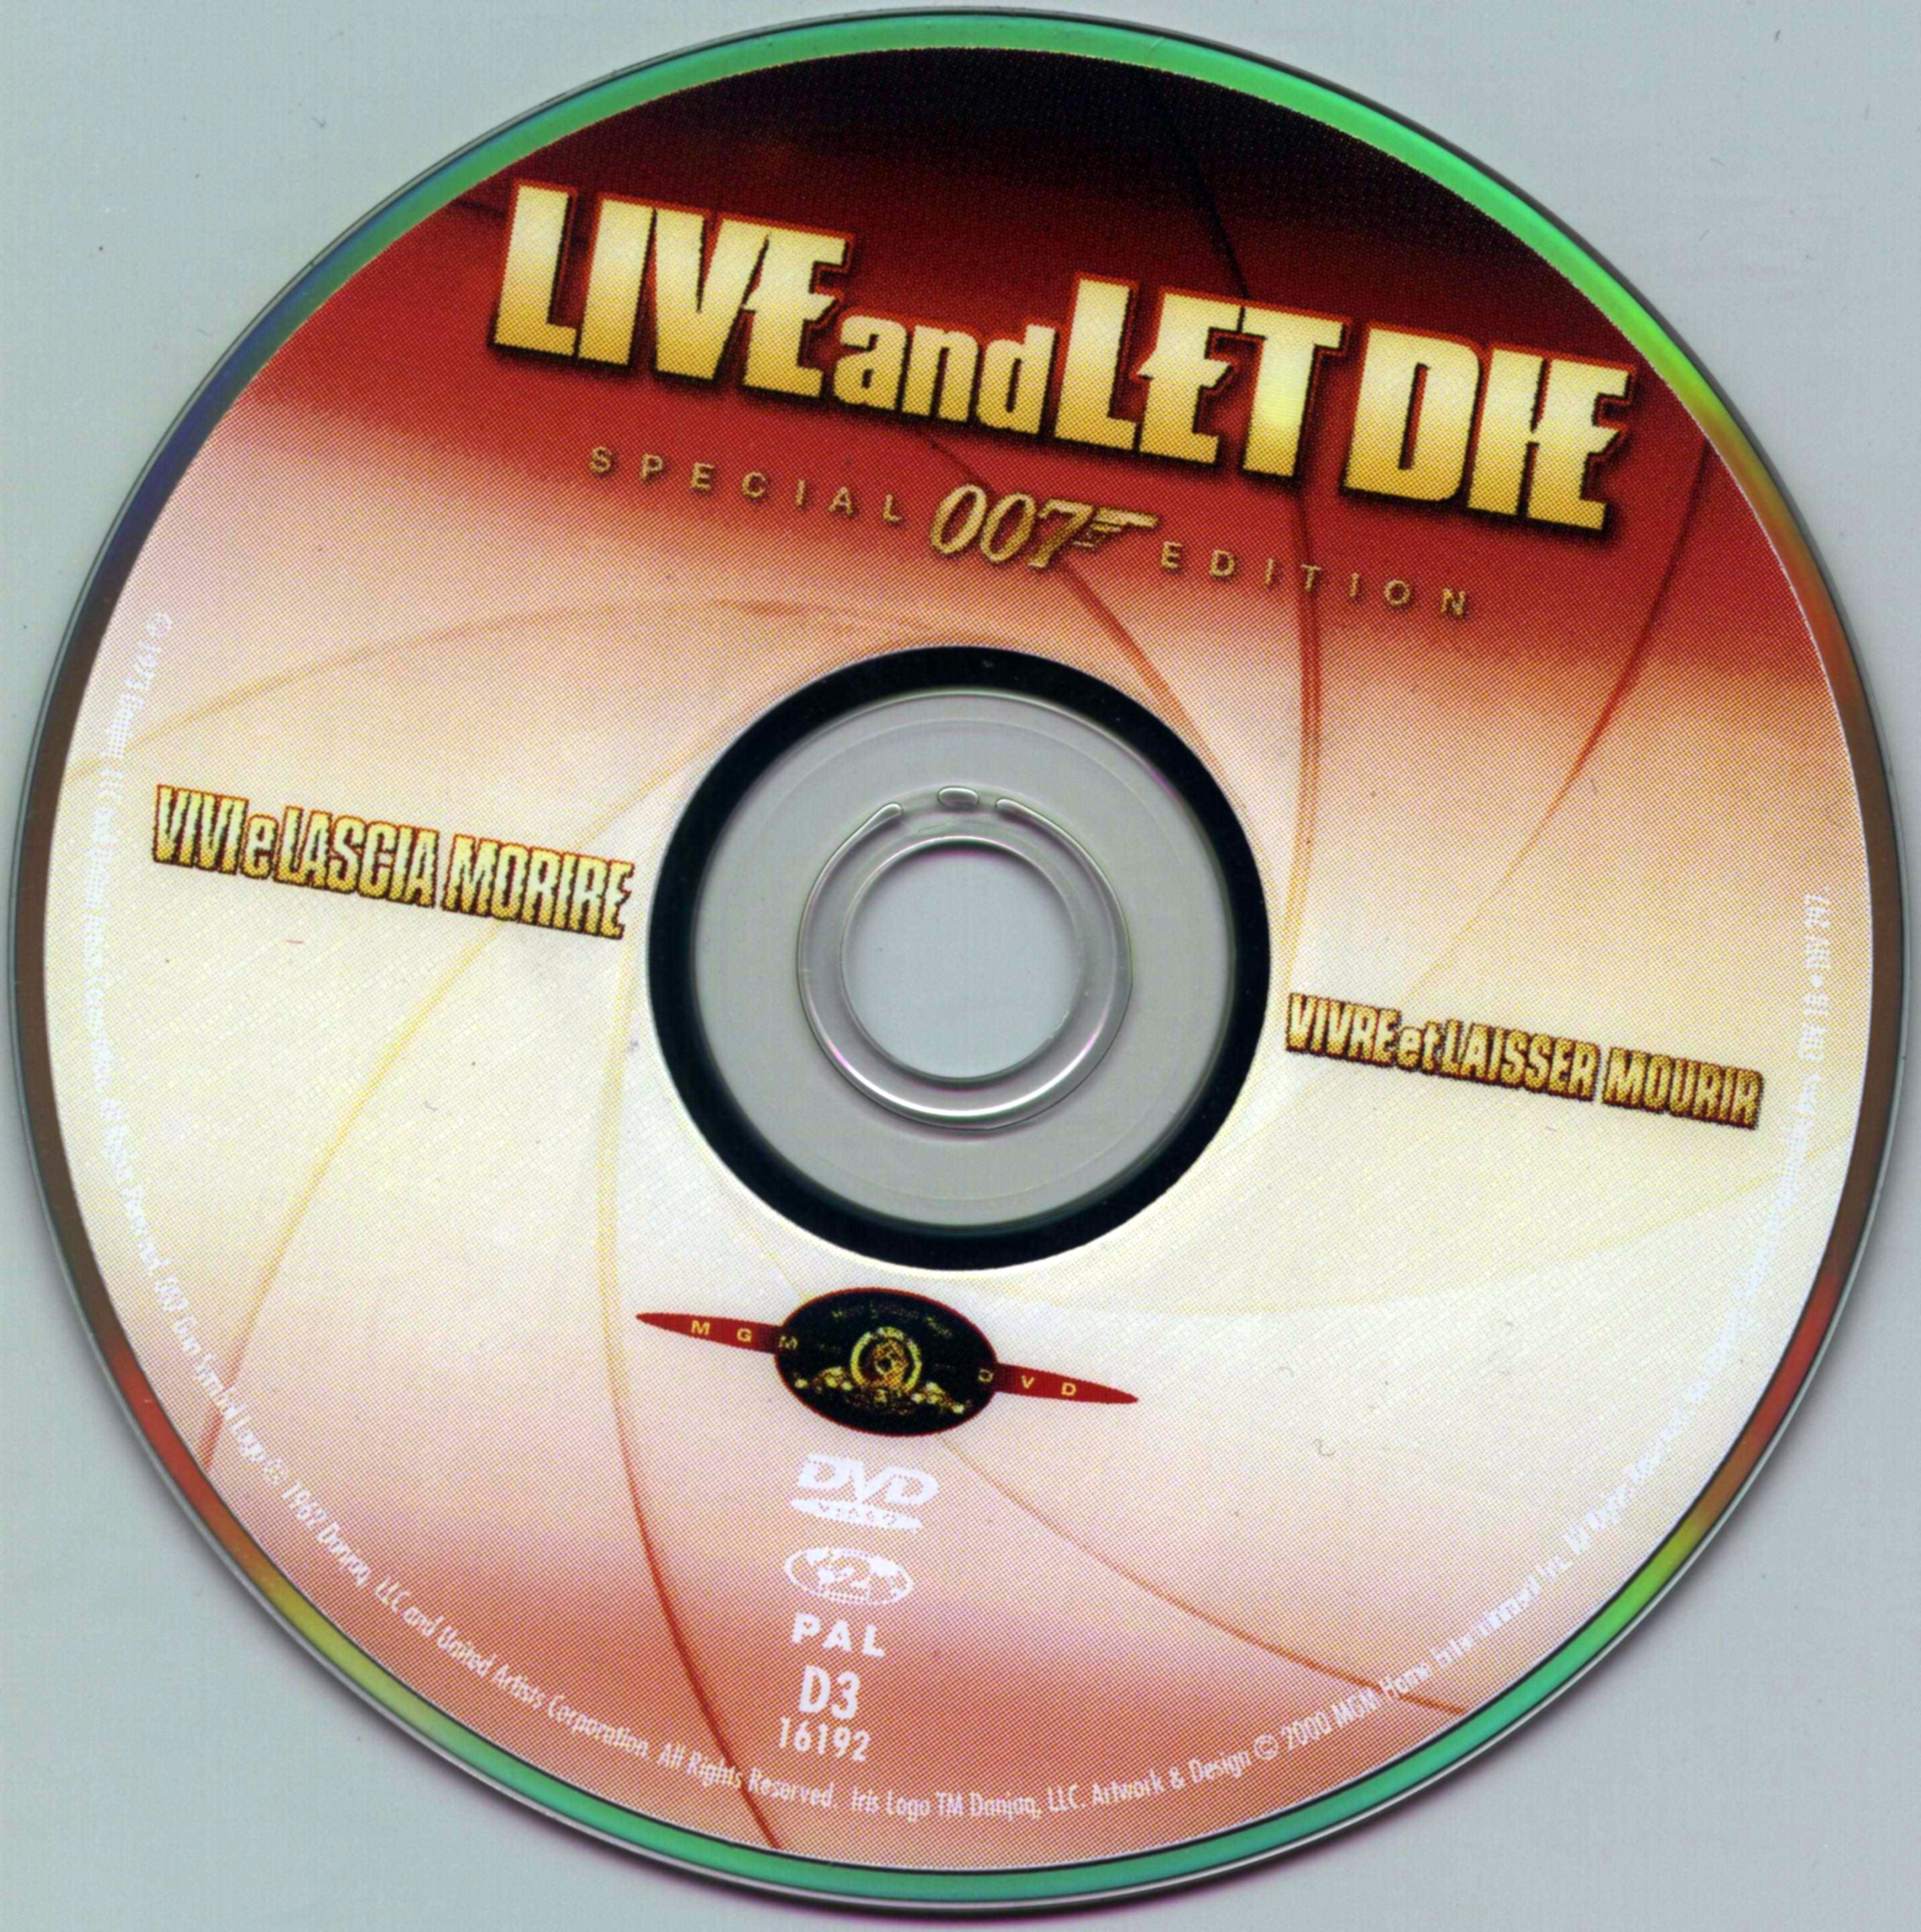 007 - Vivre et laisser mourir